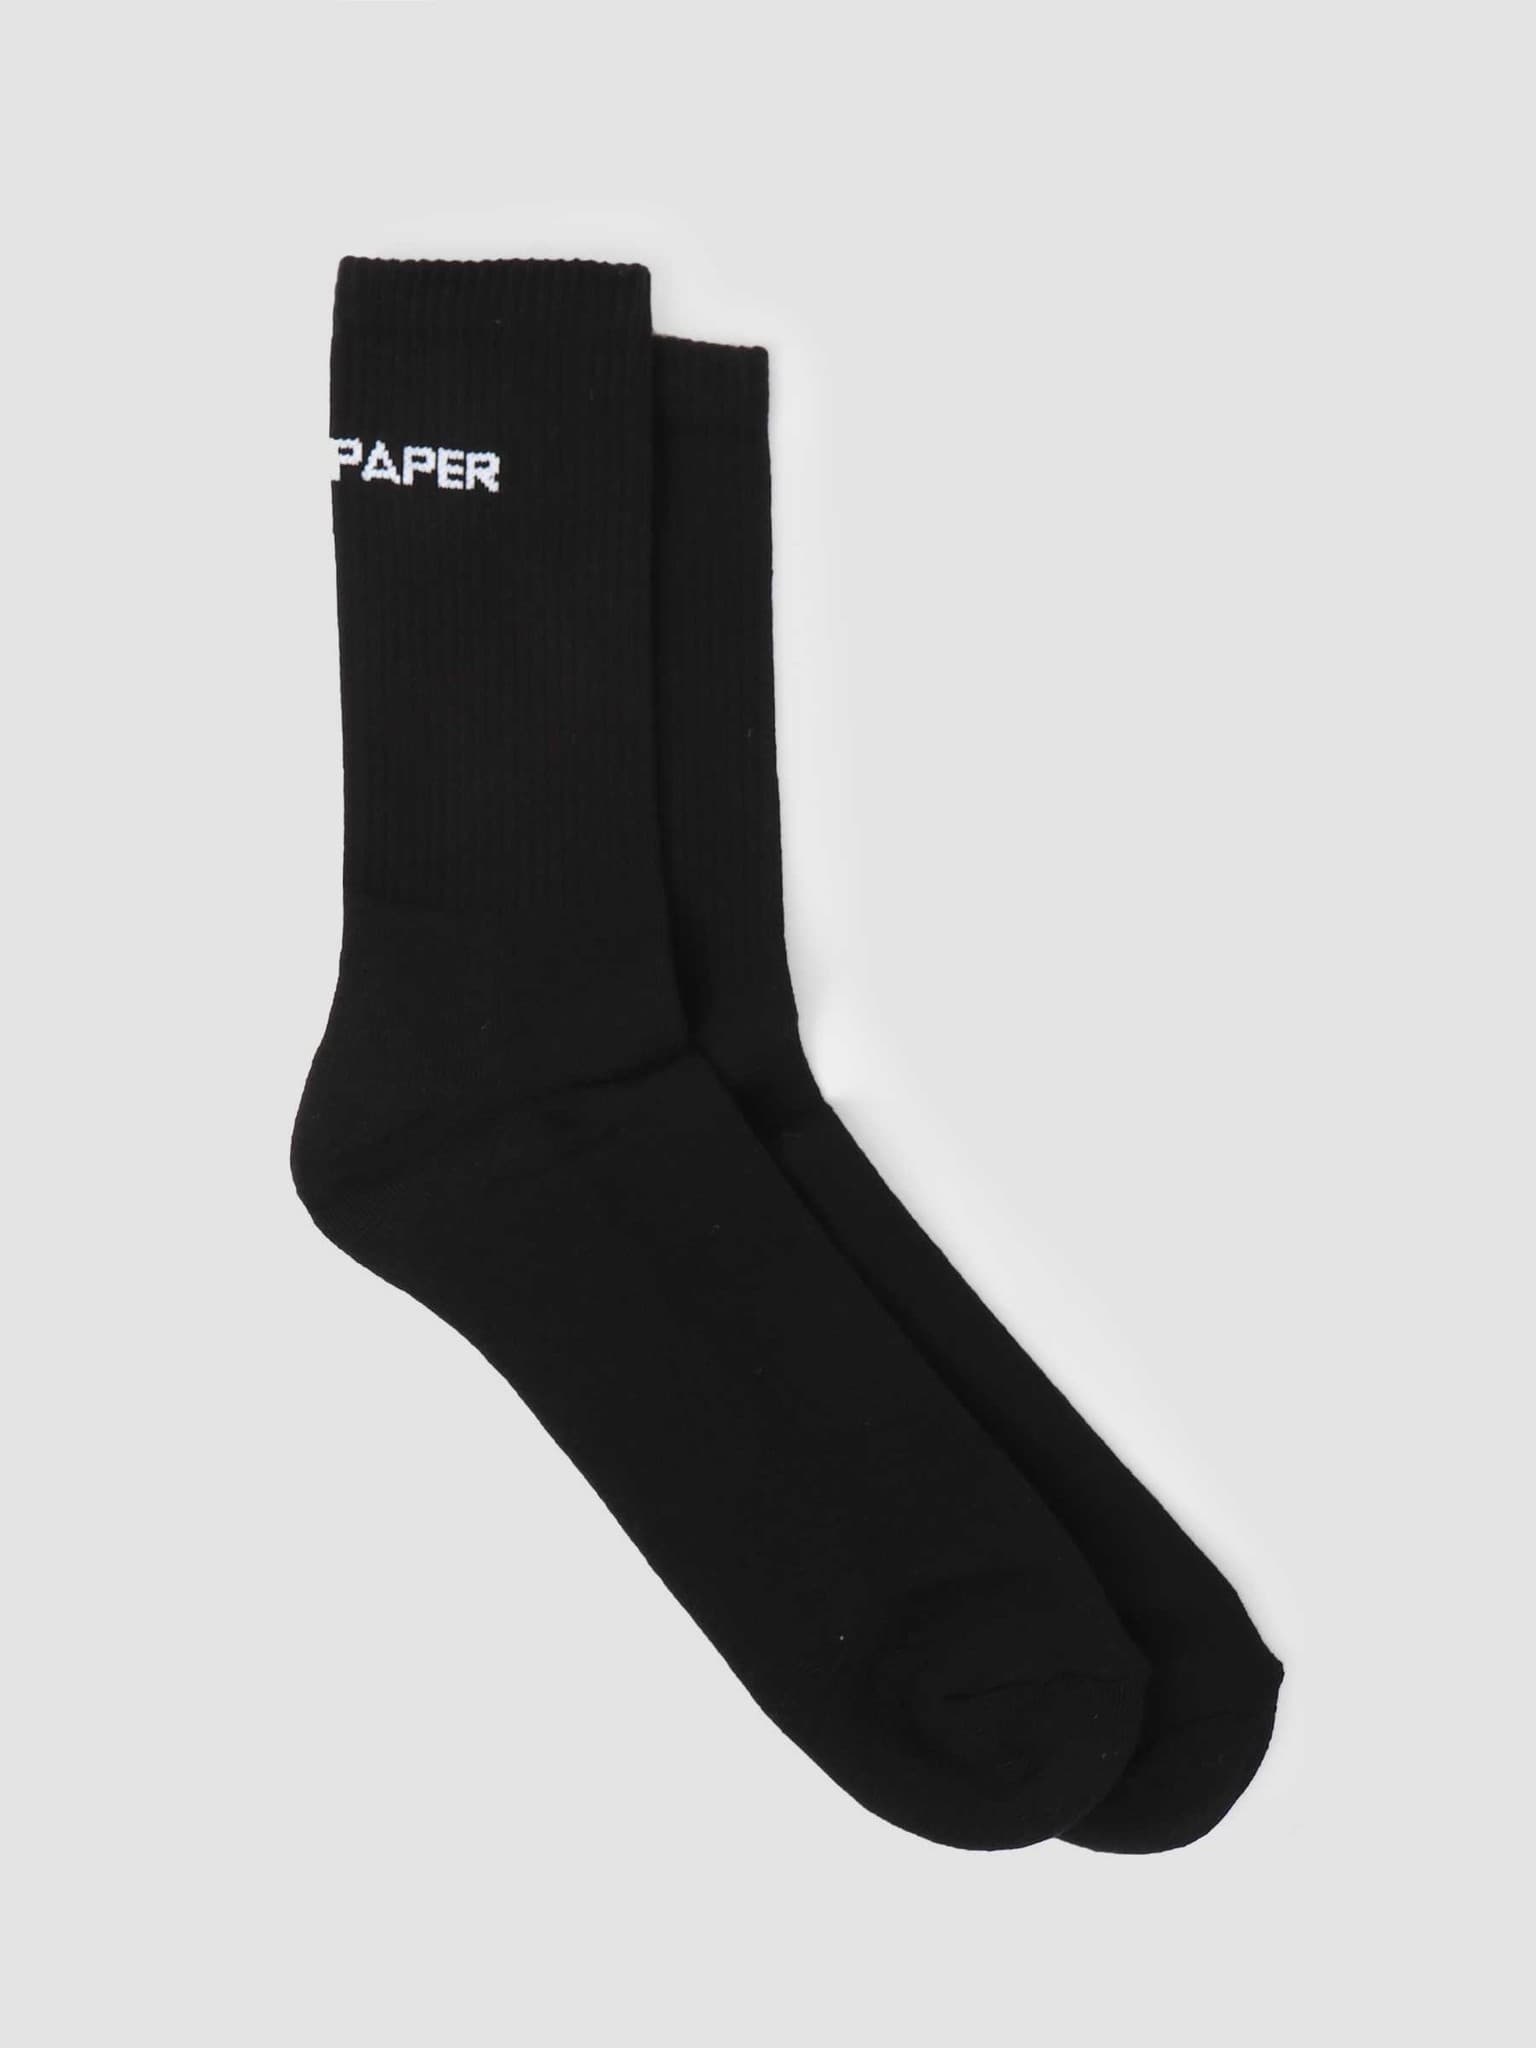 Etype Sock Black White 2111054